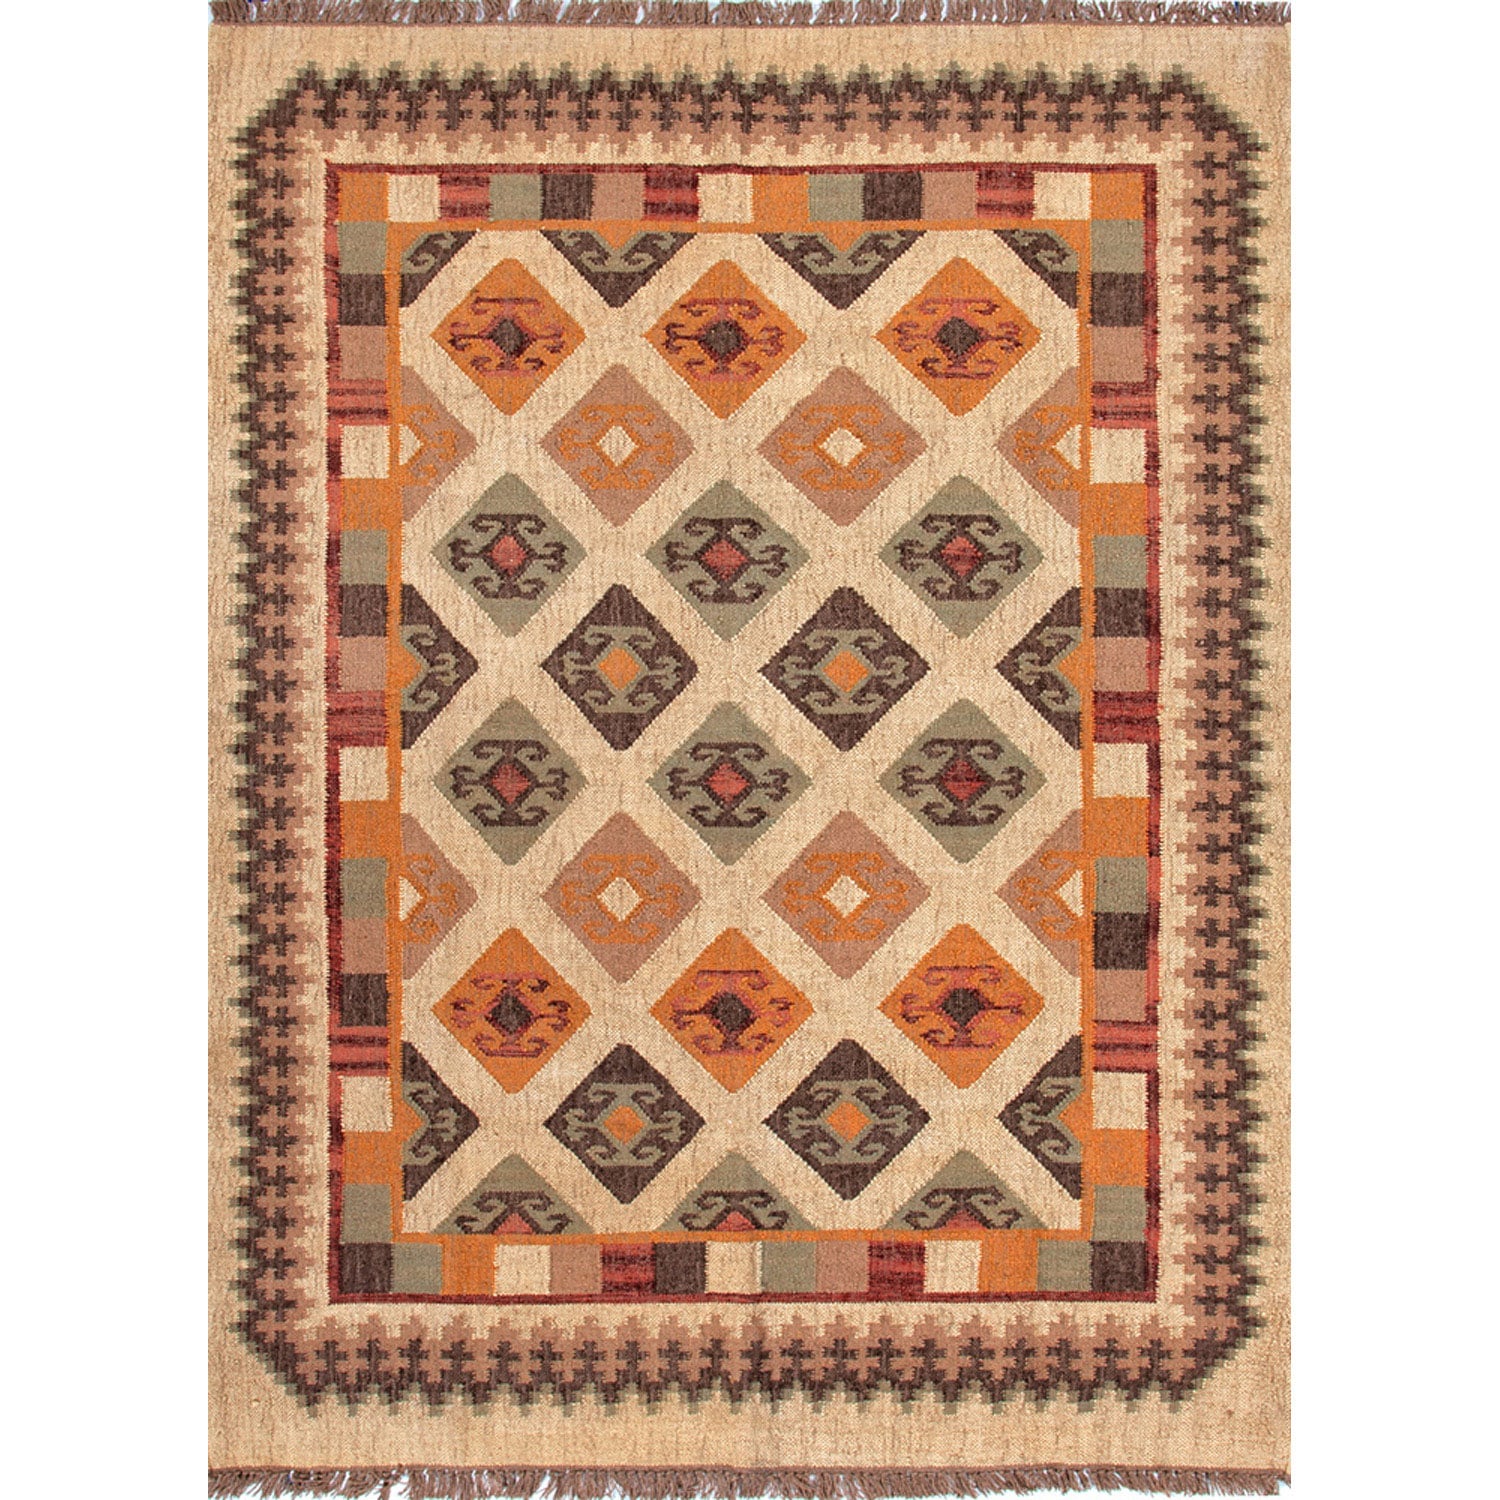 Handmade Flatweave Tribal Pattern Multicolored Jute Rug (5 X 8)